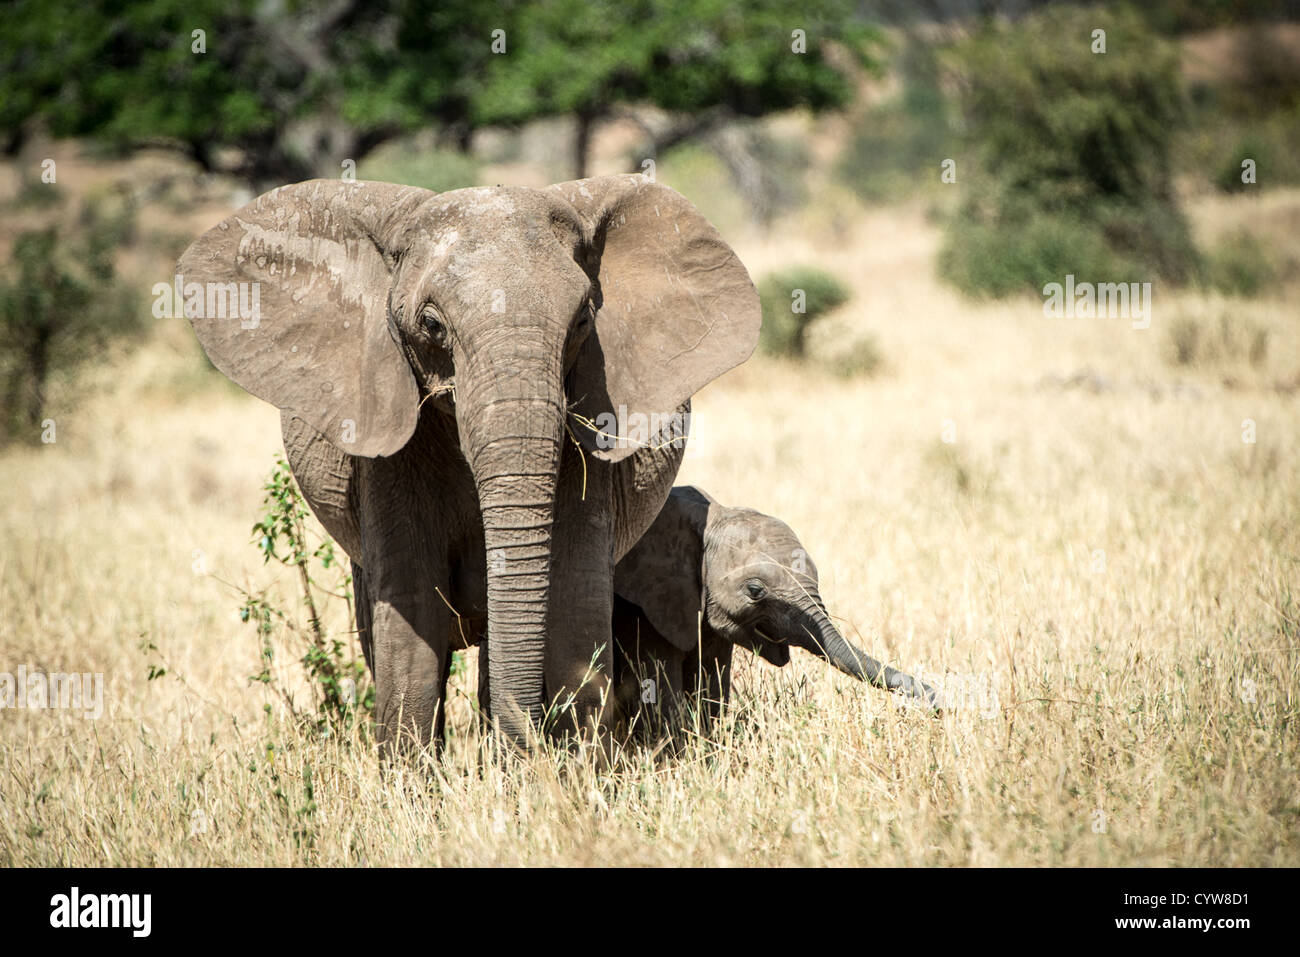 TARANGIRE-NATIONALPARK, Tansania - Ein junger Elefant bleibt in der Nähe seiner Mutter im Tarangire-Nationalpark im Norden Tansanias, nicht weit vom Ngorongoro-Krater und der Serengeti. Der Ngorongoro-Krater, der zum UNESCO-Weltkulturerbe gehört, ist ein riesiger vulkanischer Krater im Norden Tansanias. Sie wurde vor 2-3 Millionen Jahren gegründet, hat einen Durchmesser von etwa 20 Kilometern und ist die Heimat vielfältiger Tiere, einschließlich der „Big Five“-Wildtiere. Das Ngorongoro Conservation Area, bewohnt von den Maasai, enthält auch bedeutende archäologische Stätten wie die Olduvai-Schlucht und Laetoli, die Einblicke in Ohr bieten Stockfoto